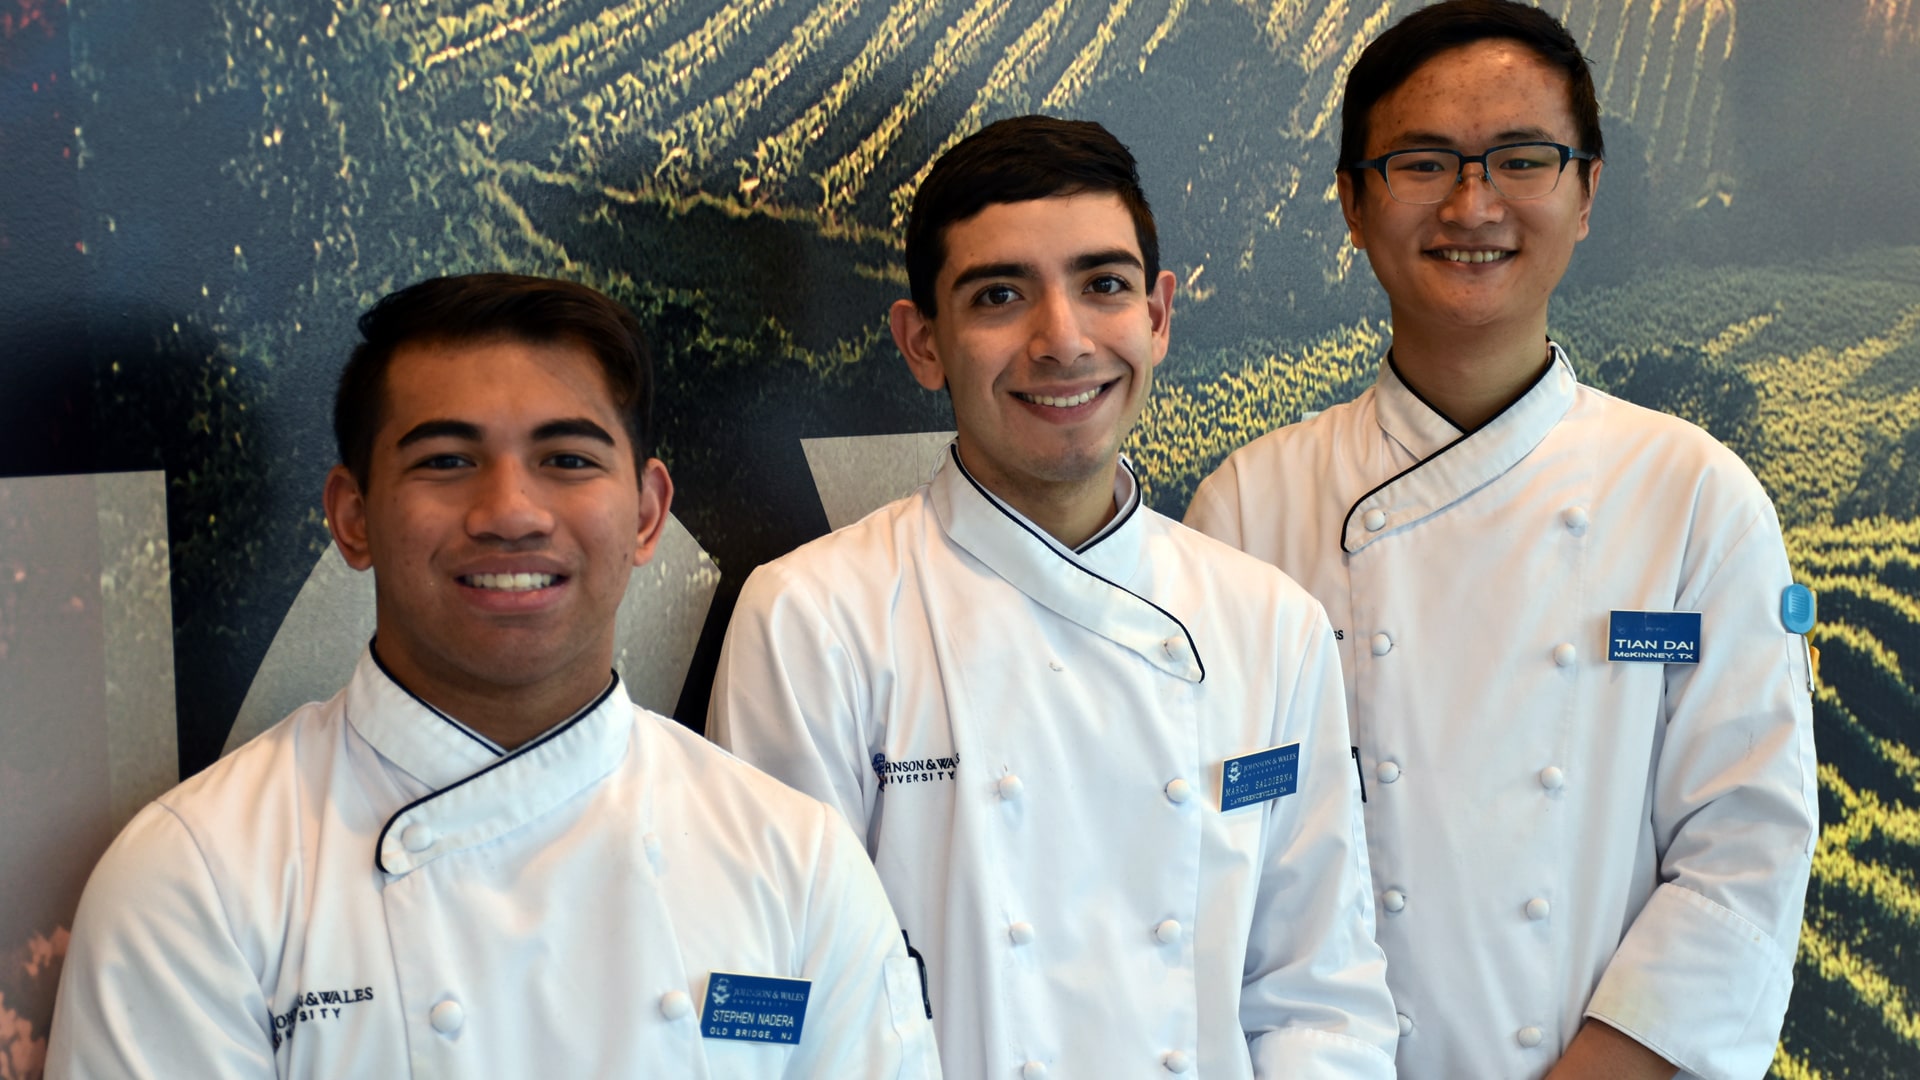 JWU culinary arts students Spehen Nadera, Marco Saldierna and Tian Dai